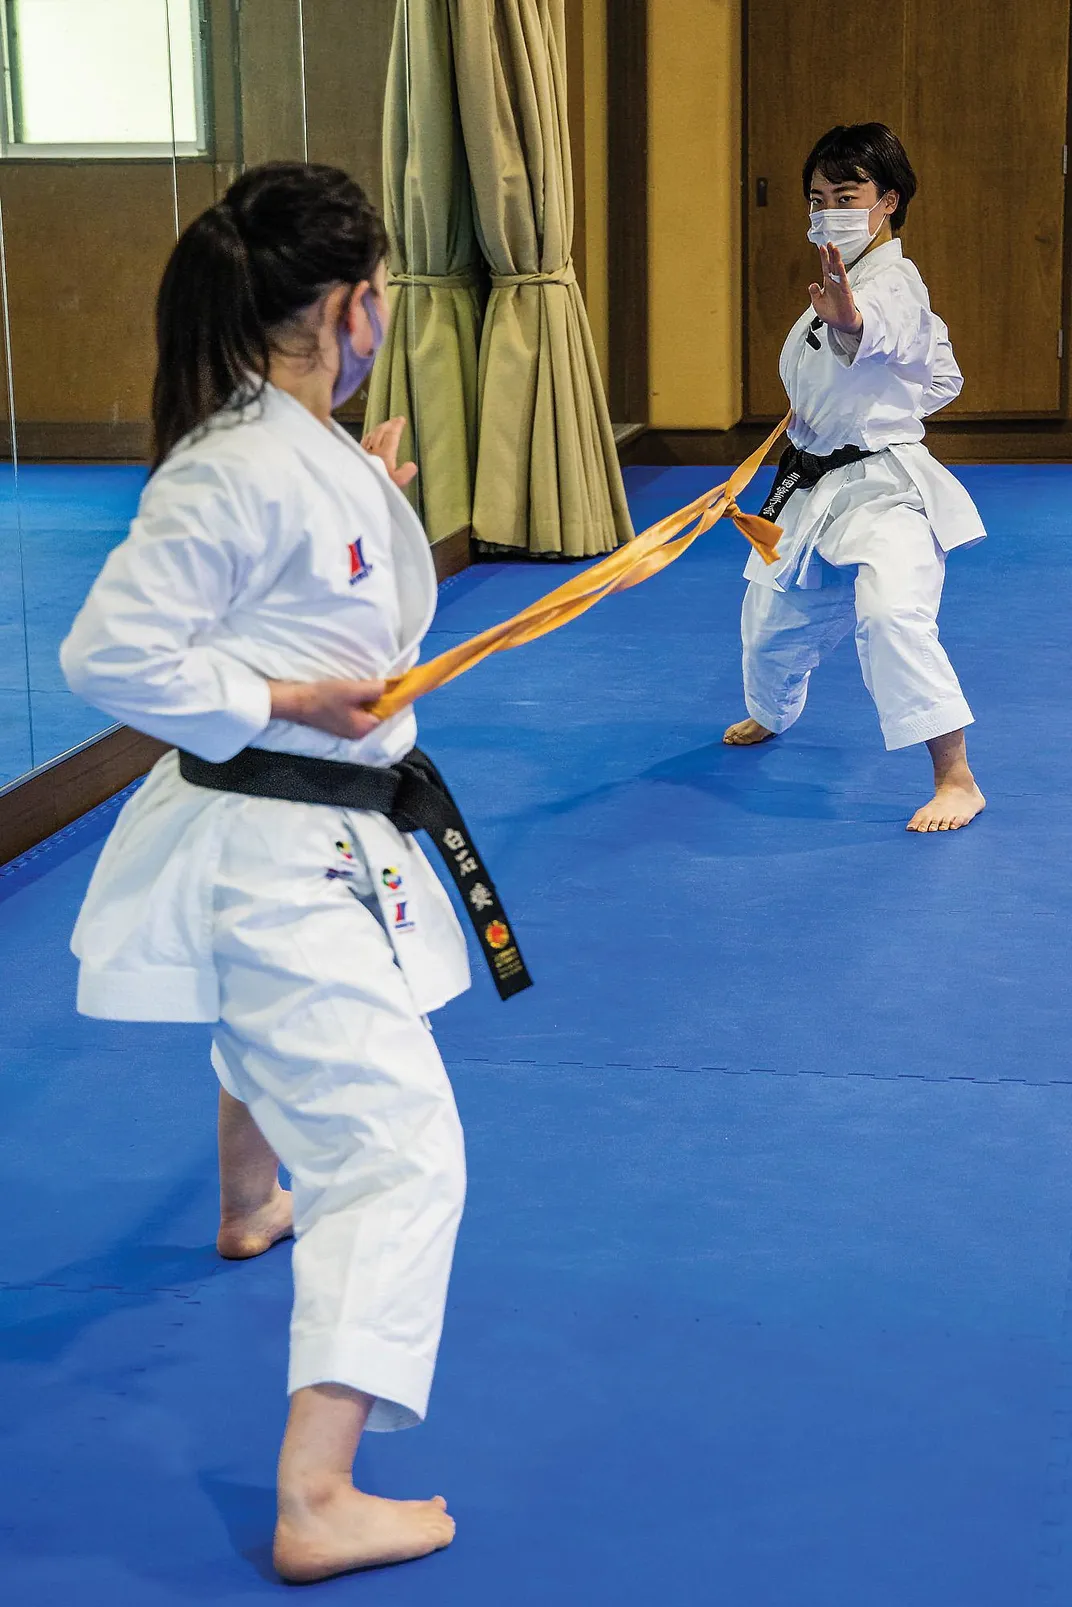 Karate participants